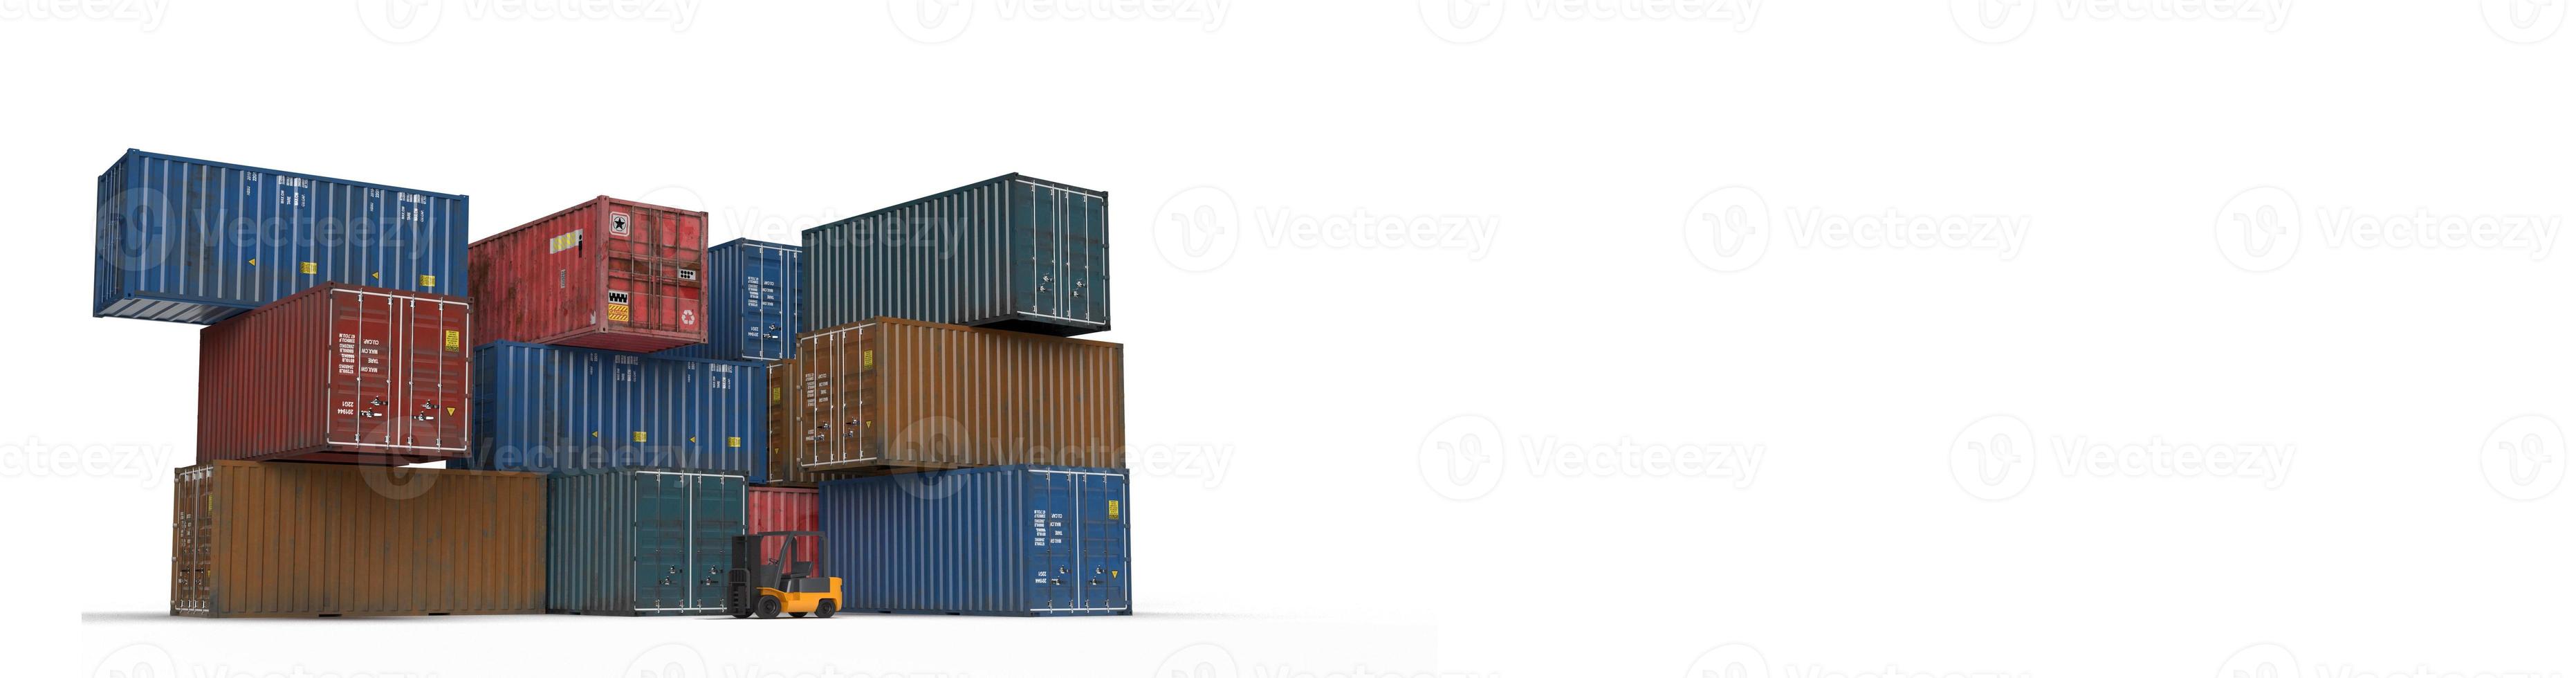 container gabelstapler box versand pier metall kran waren symbol dekoration ornament business wirtschaft logistik fracht import export lagerhaus handel krieg laden zoll international.3d render foto